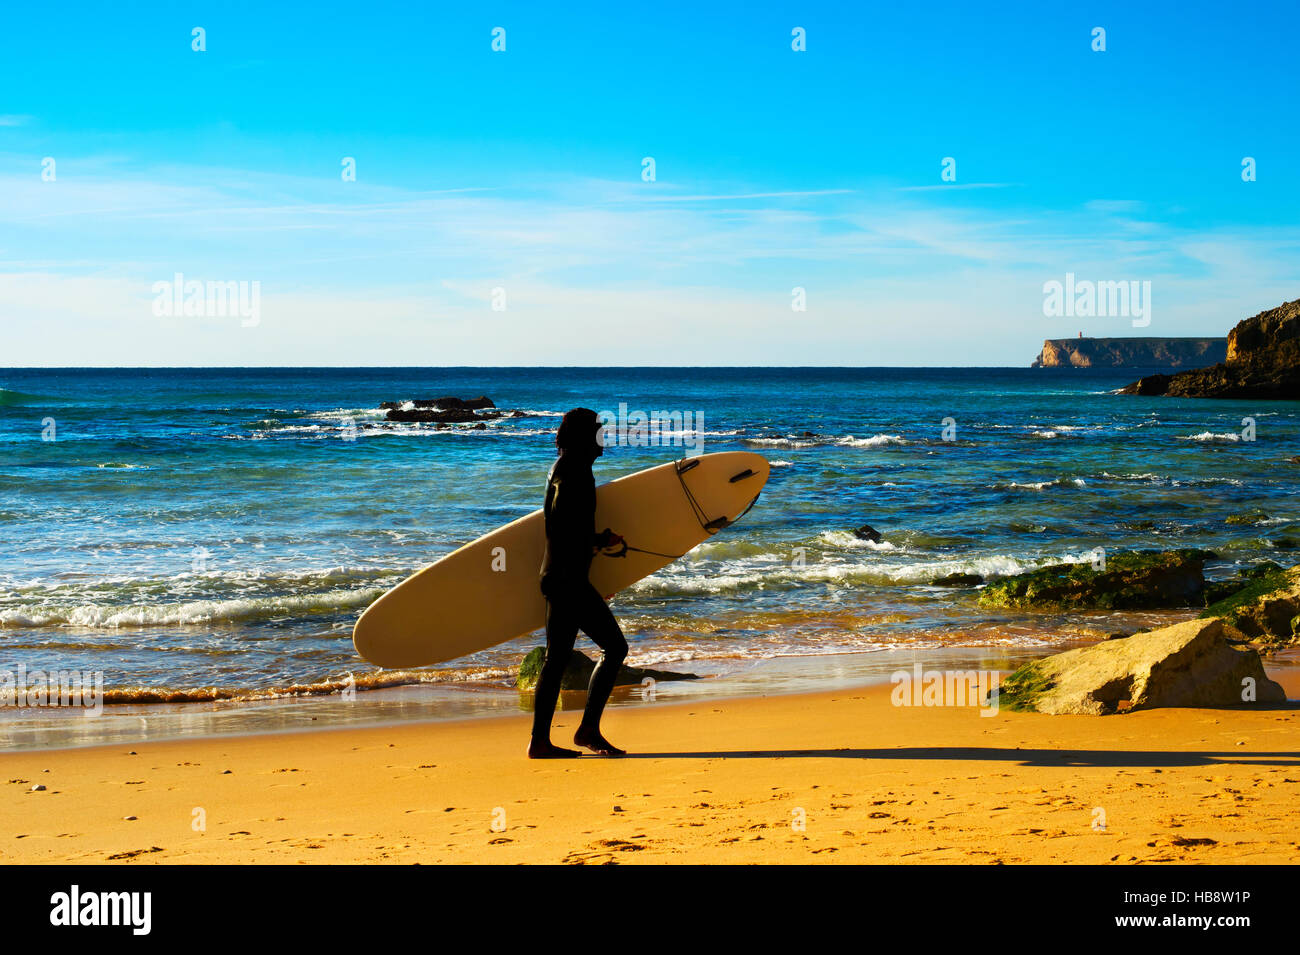 Surfeur sur la plage, silhouette Banque D'Images